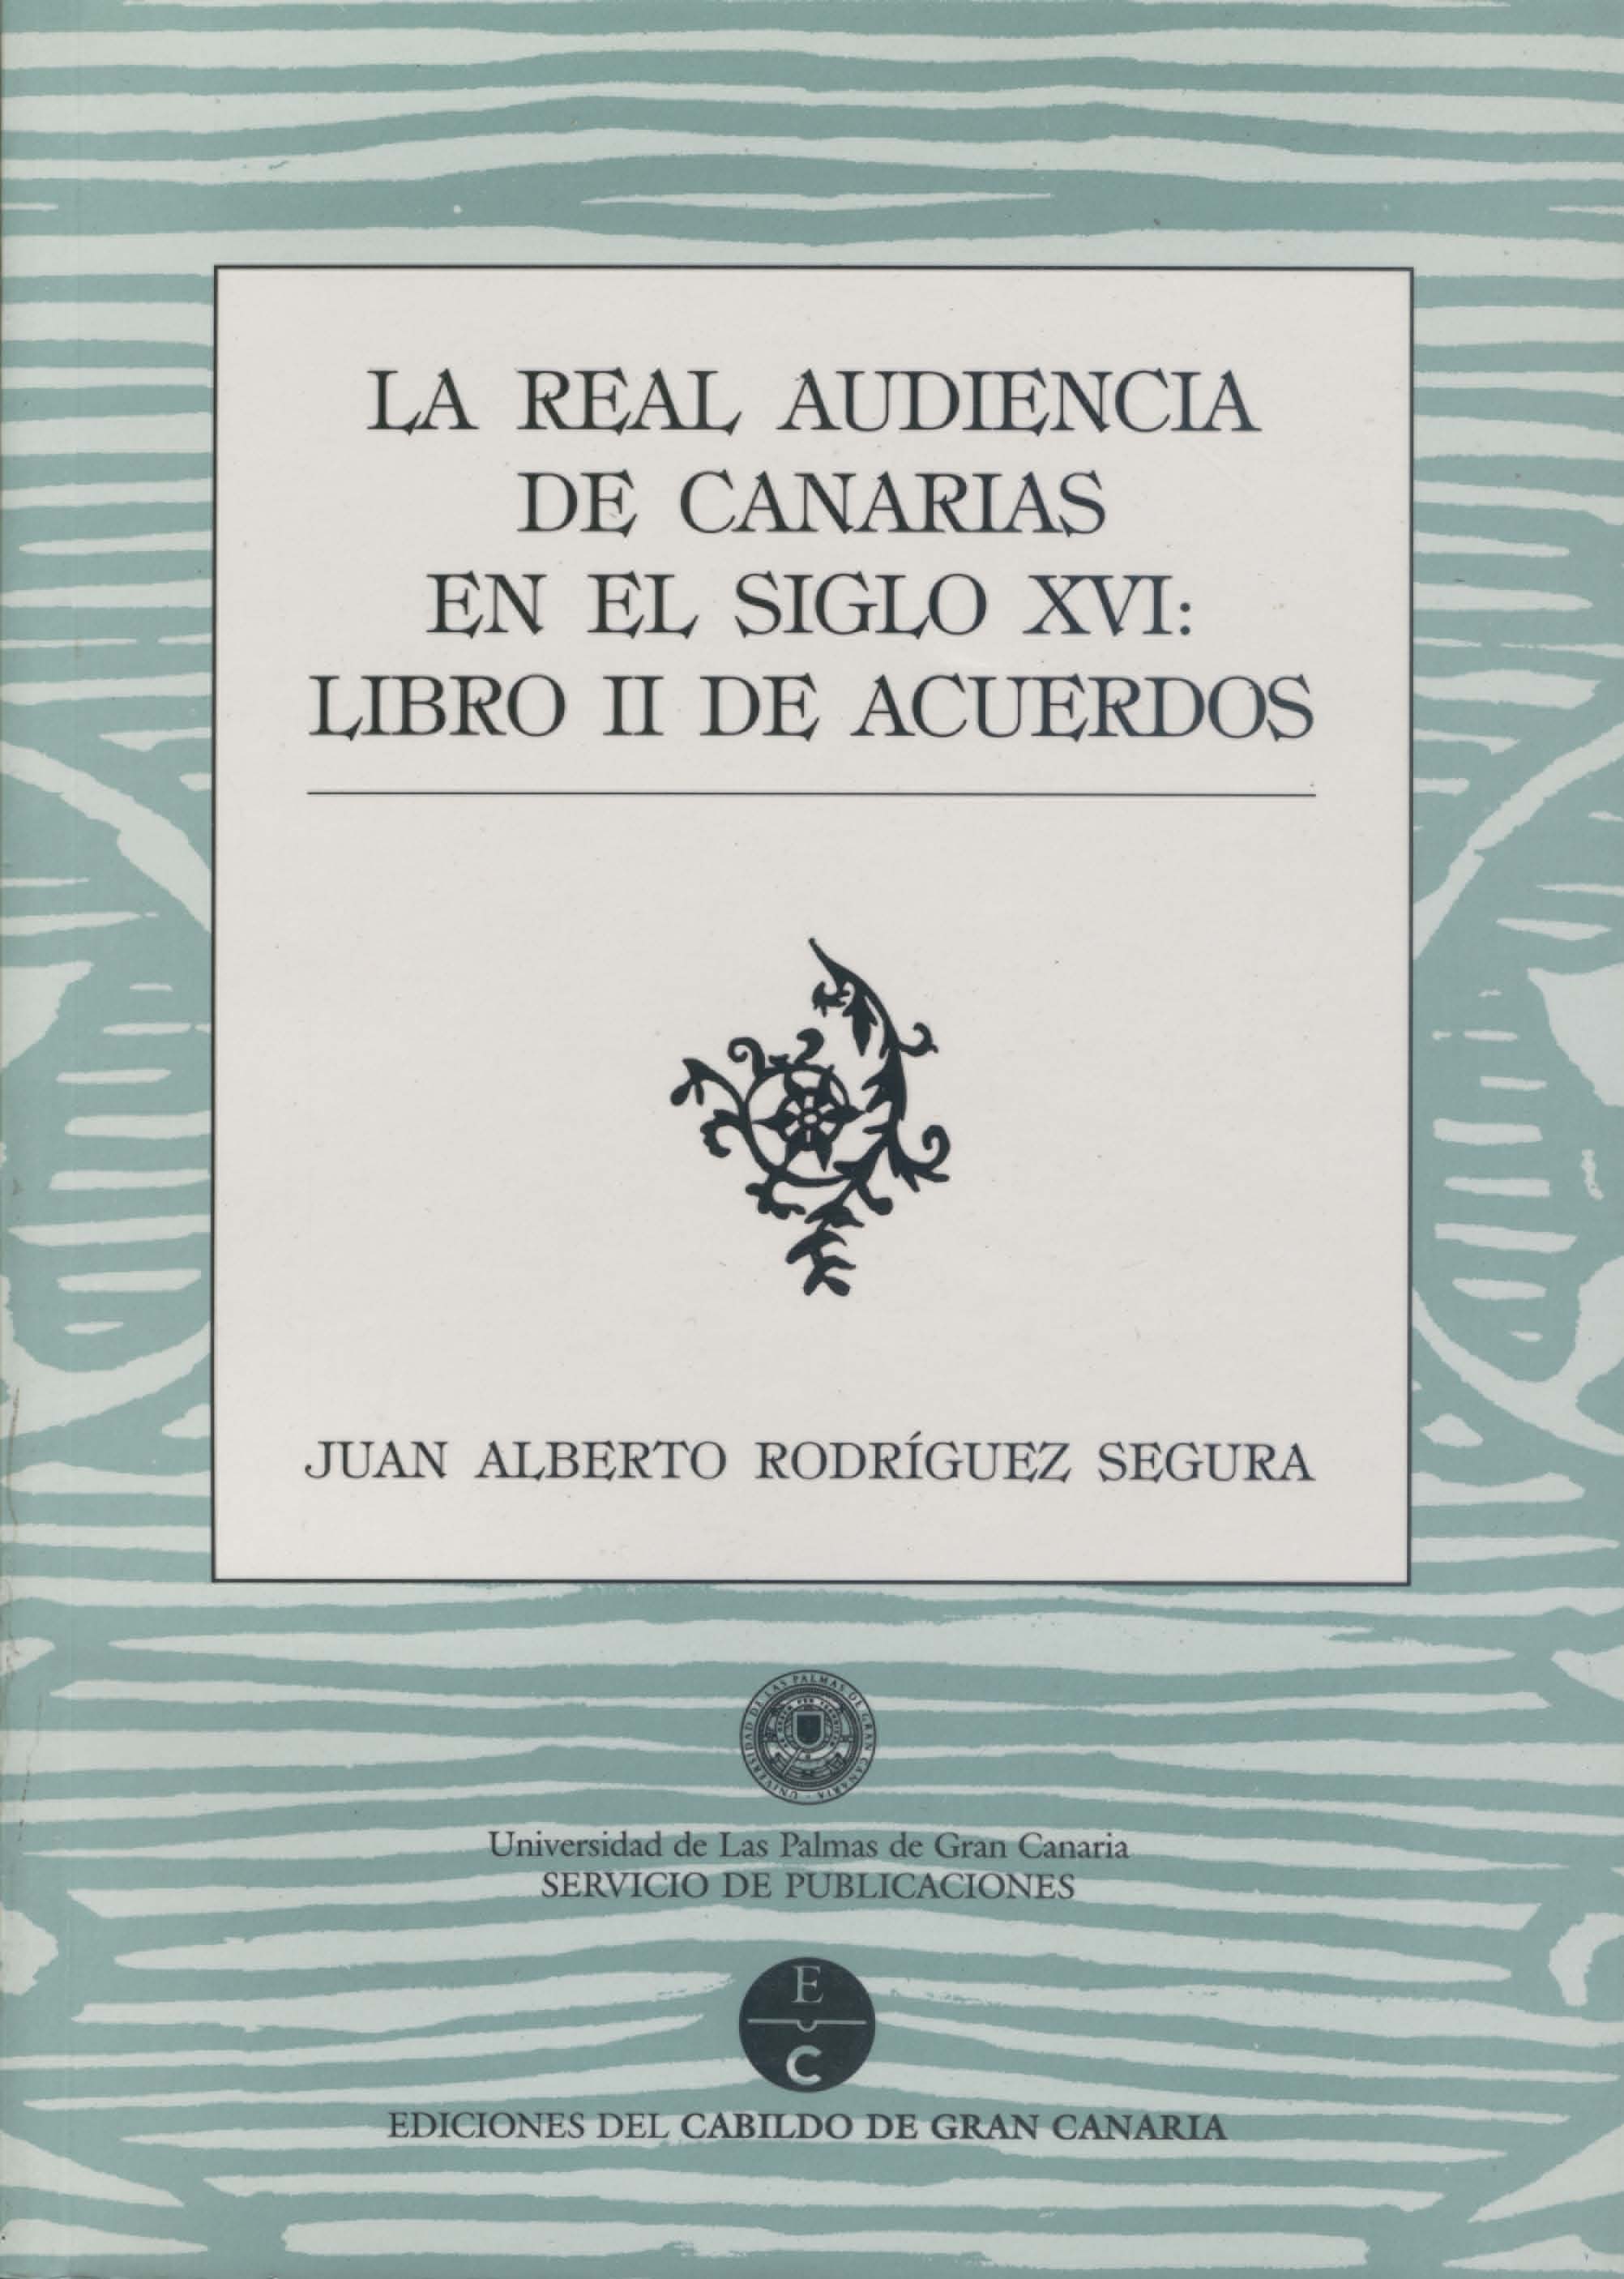 La Real Audiencia de Canarias en el siglo XVI: Libro II